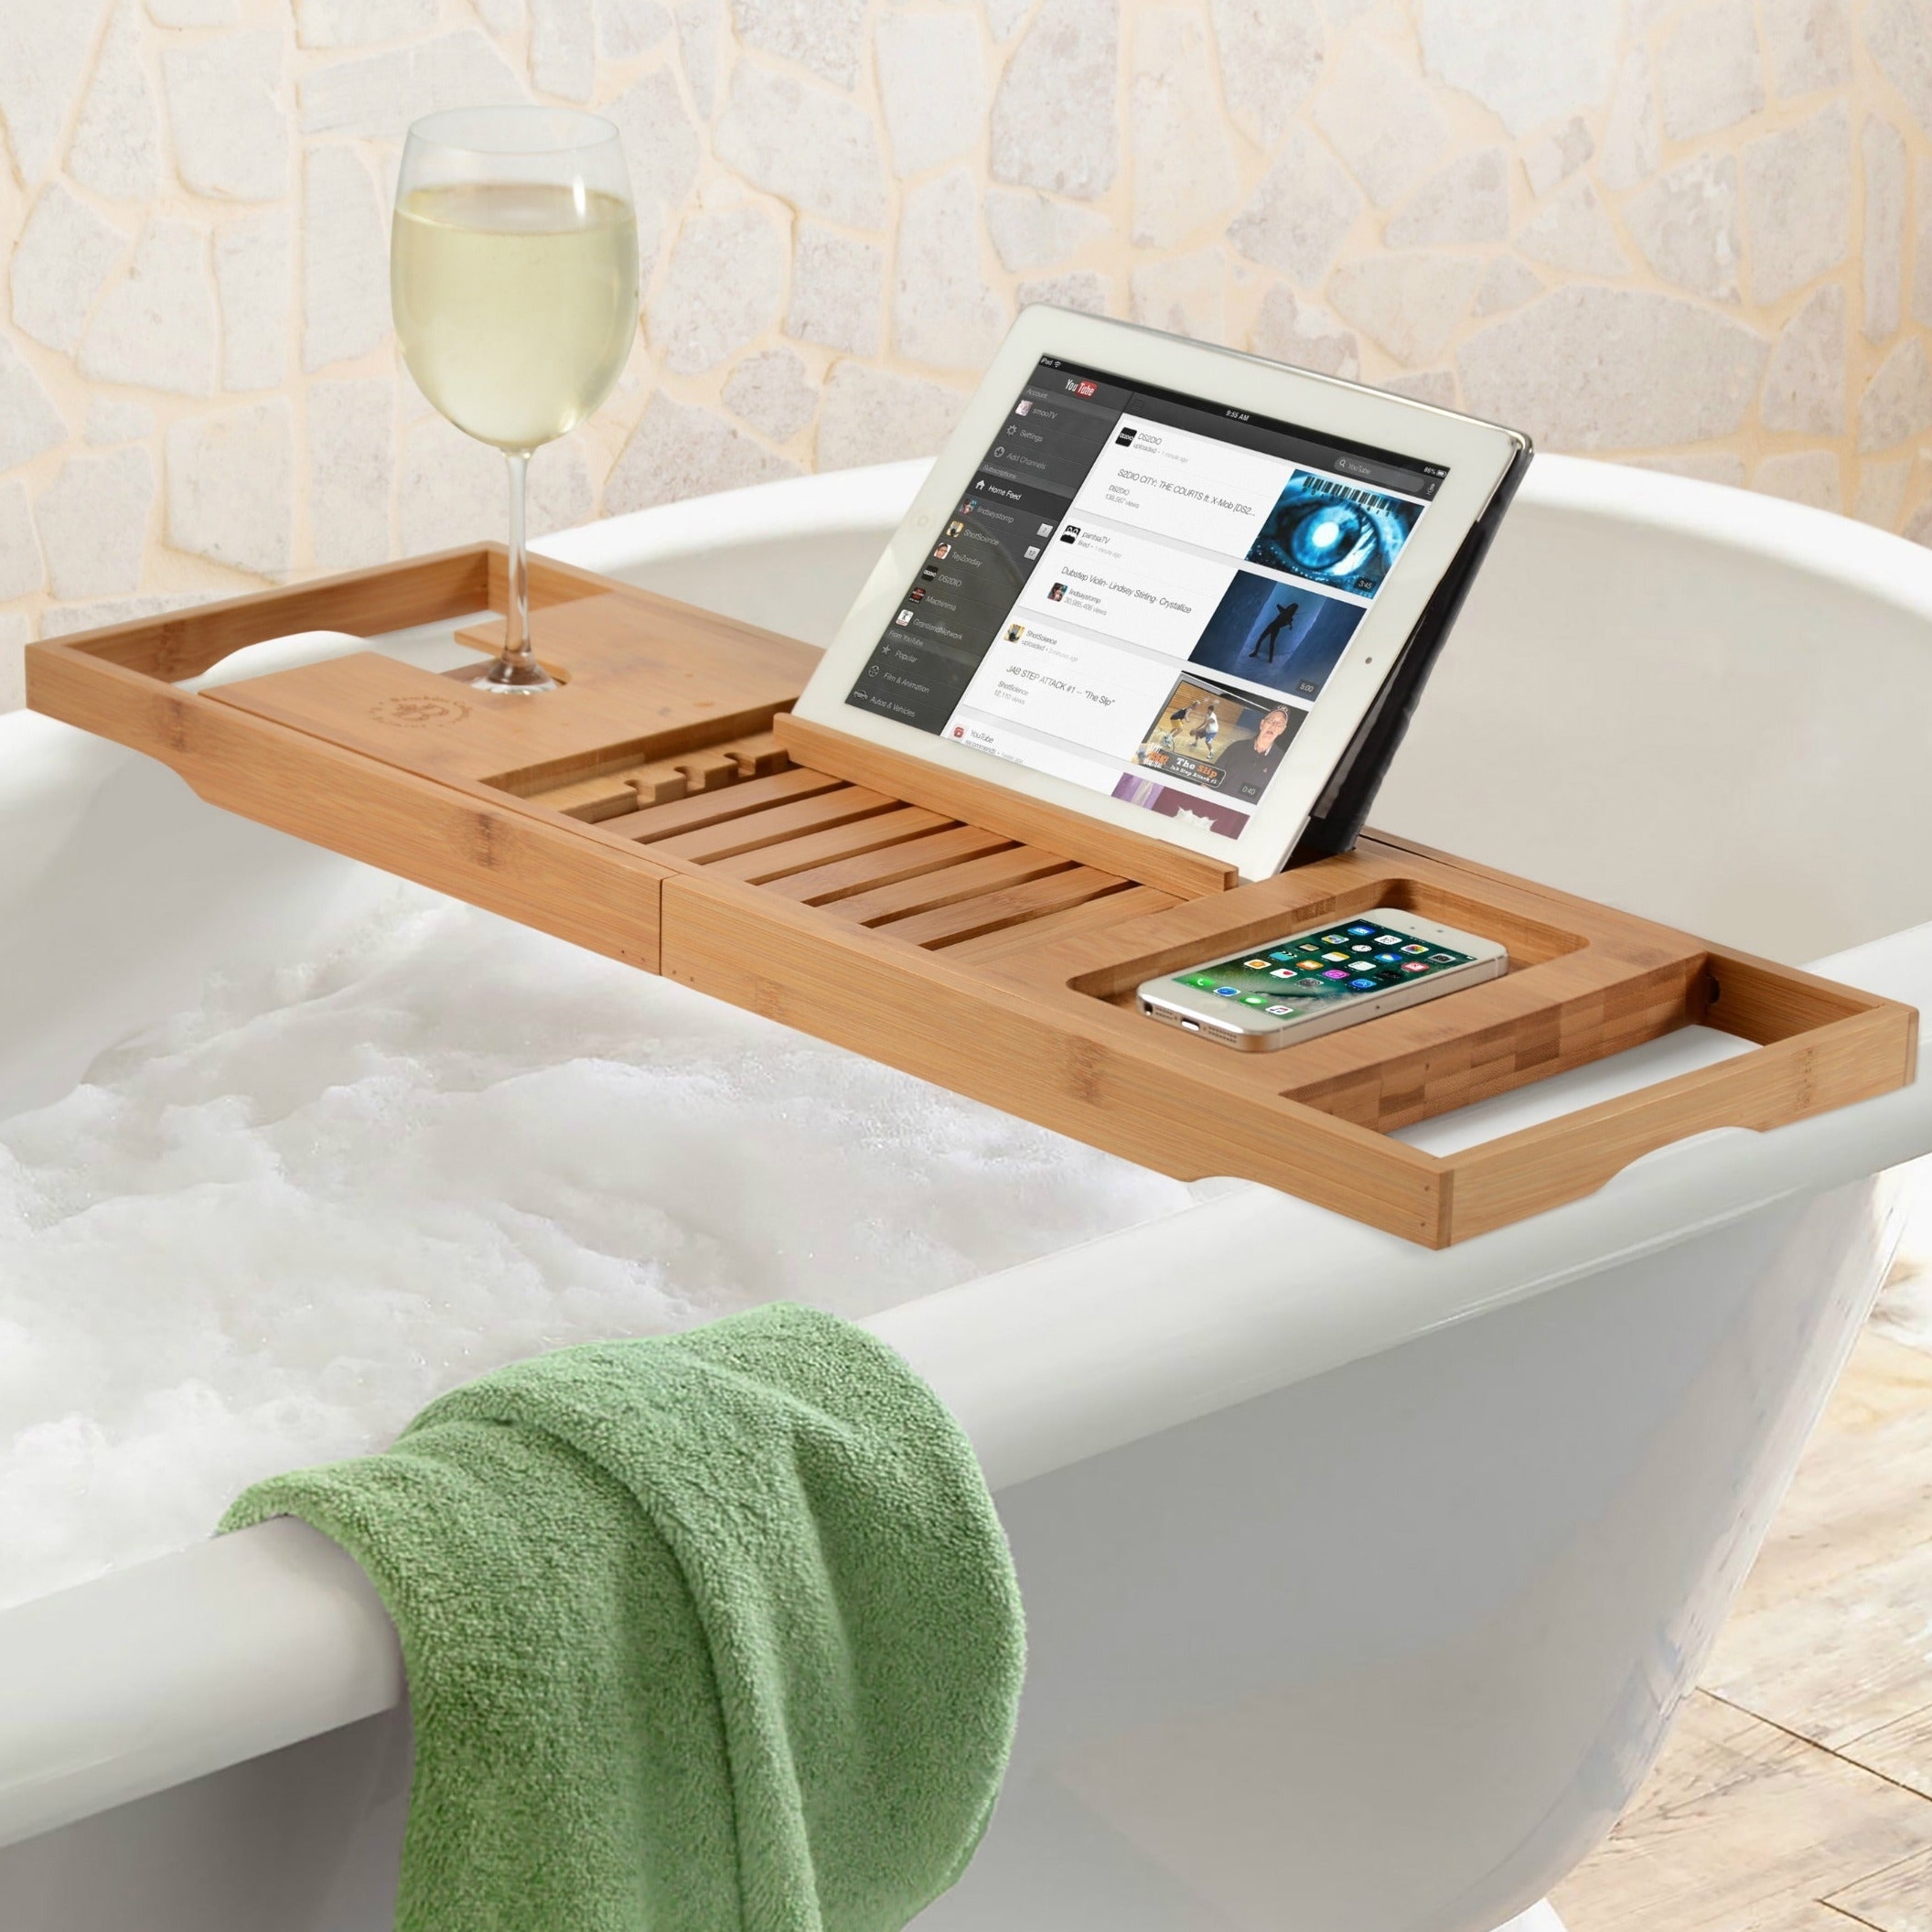 Bathtub Tray Extendable Bathroom Bathtub Organizer Bath Tub Rack Towel Book  Holder Adjustable Bath Tub Tray